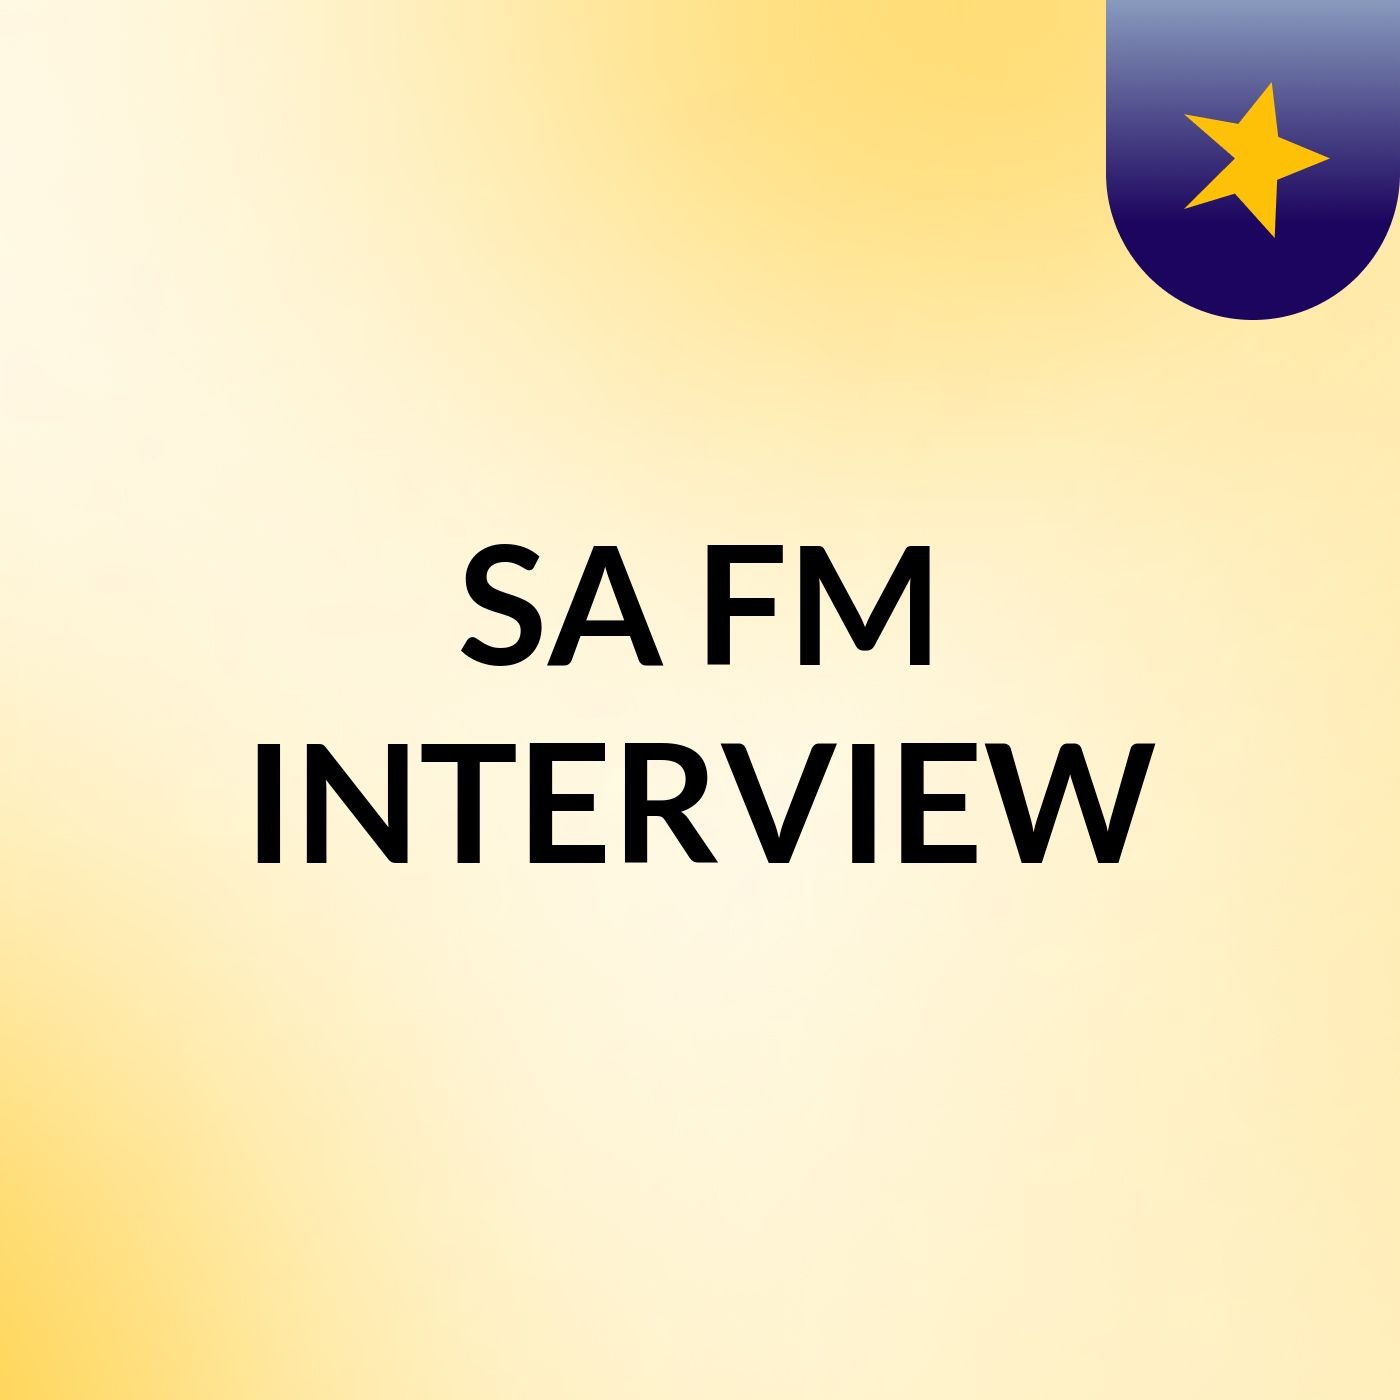 SA FM INTERVIEW